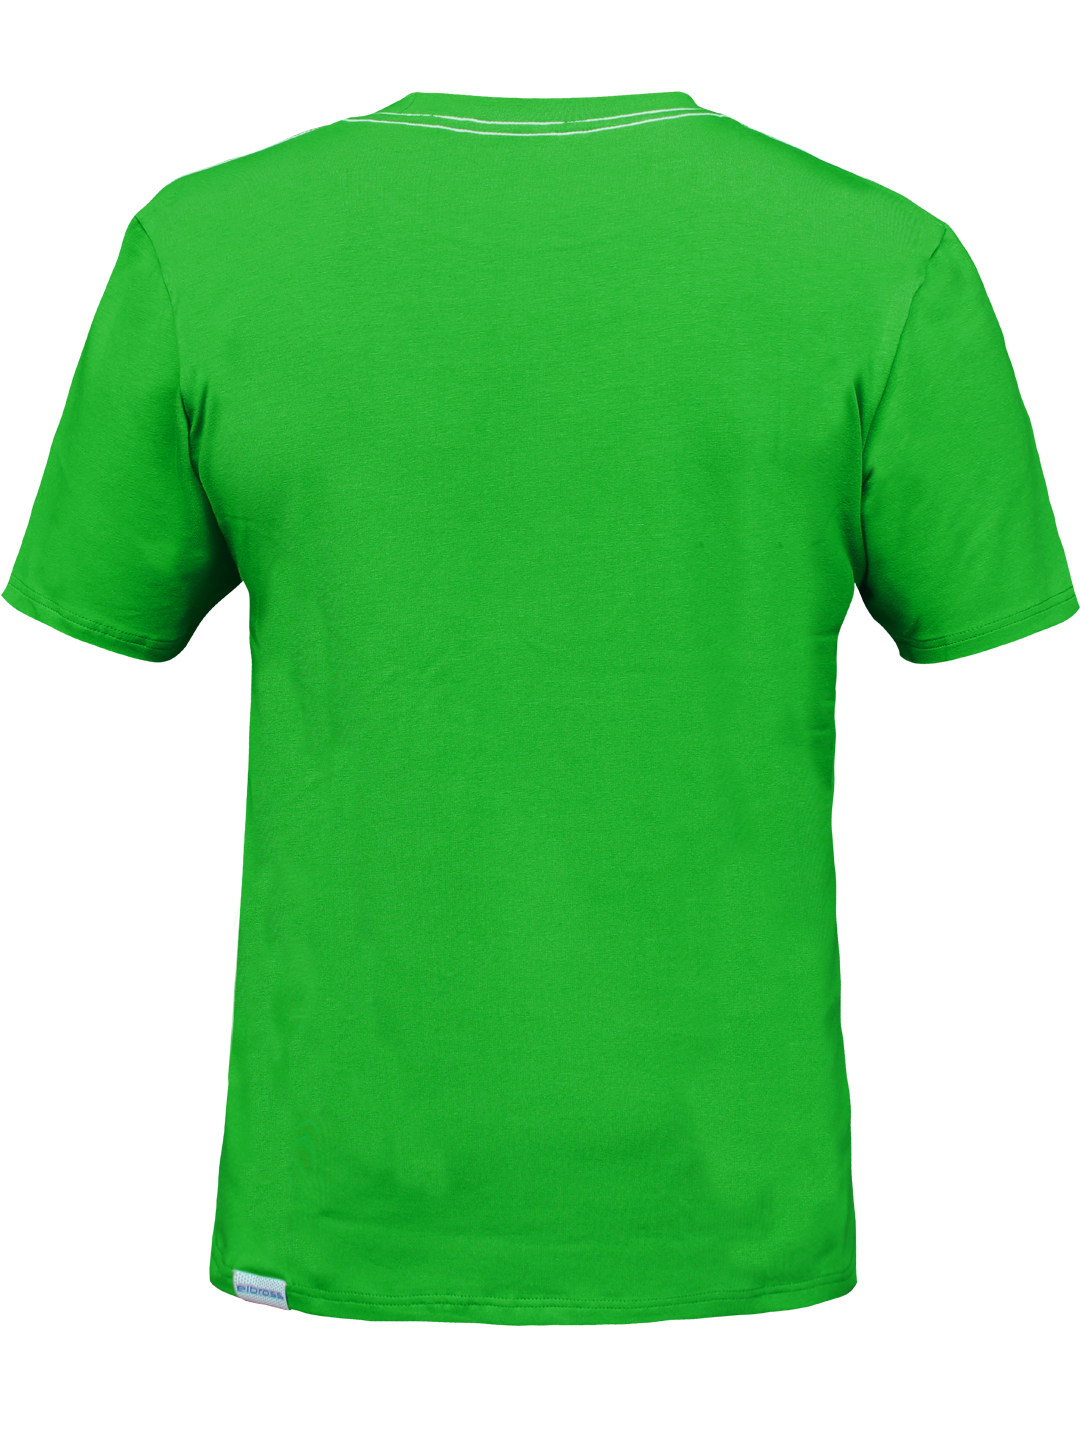 Outdoor Tshirt Green